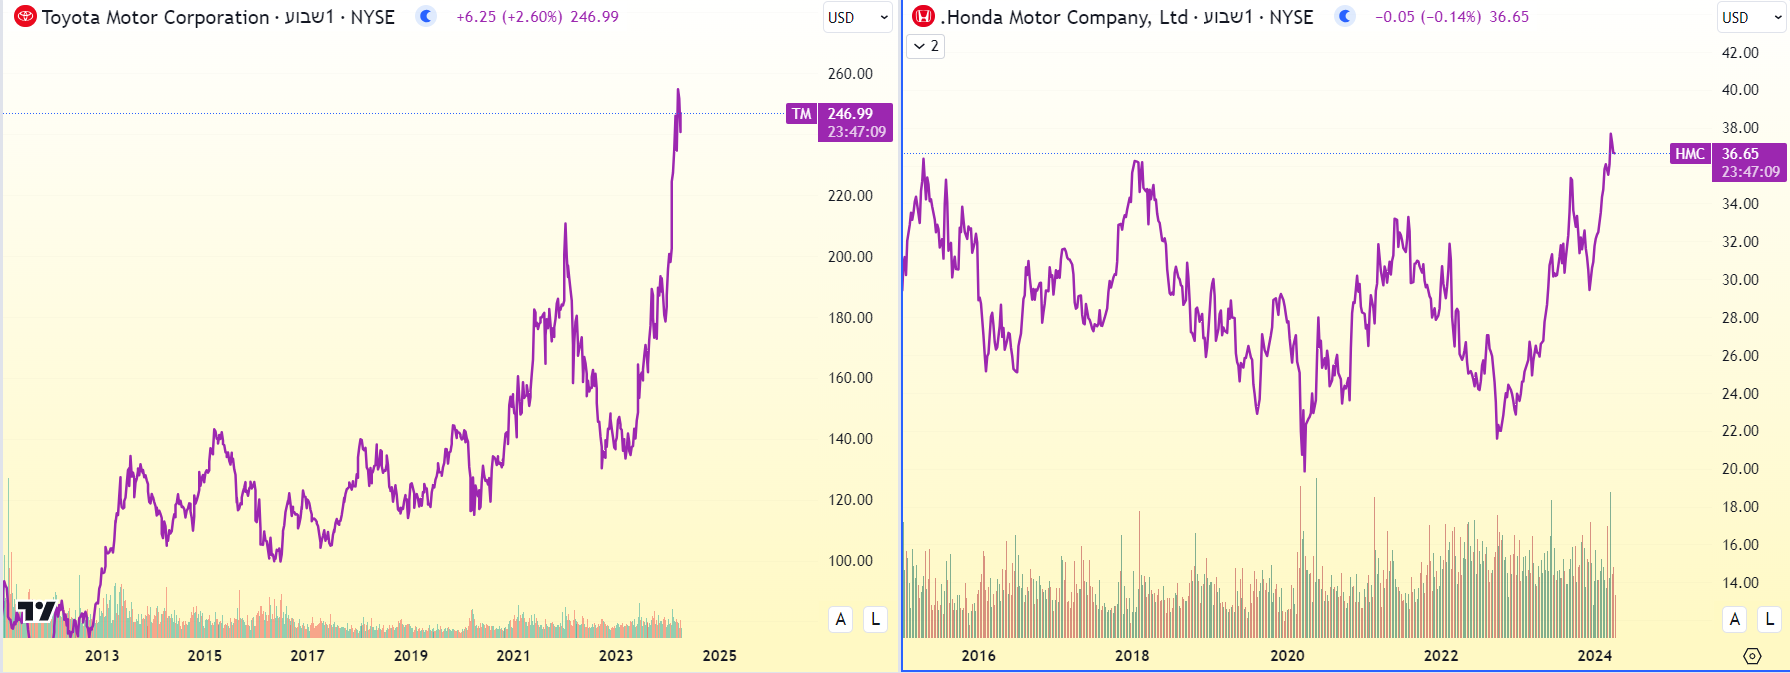 מניות טויוטה והונדה בגרף שבועי, מאת TradingView